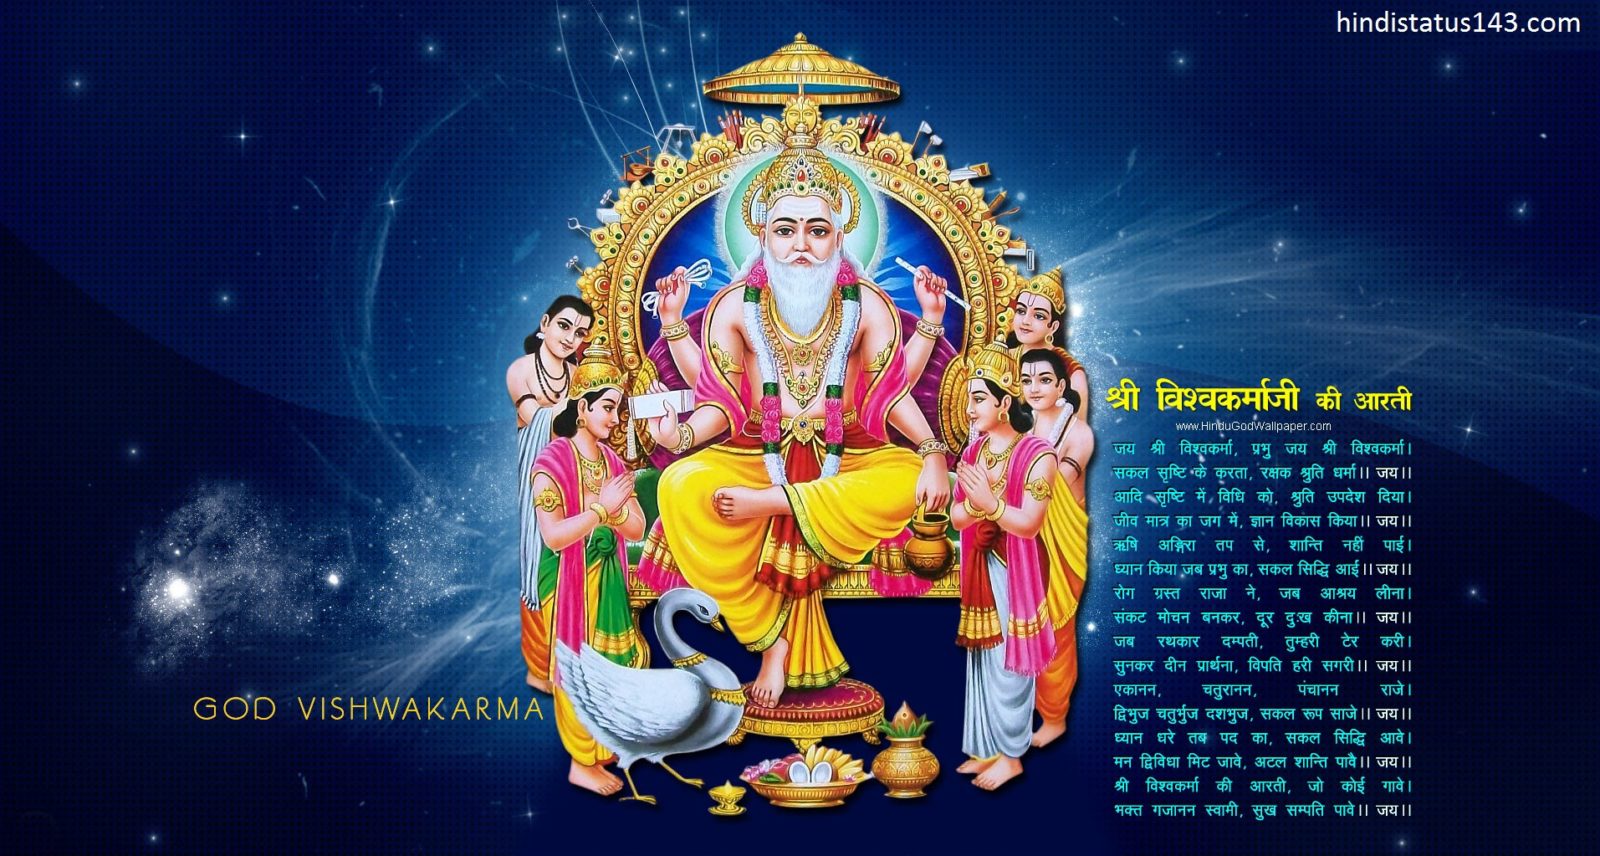 Happy Vishwakarma Day 2018 - HD Wallpaper 